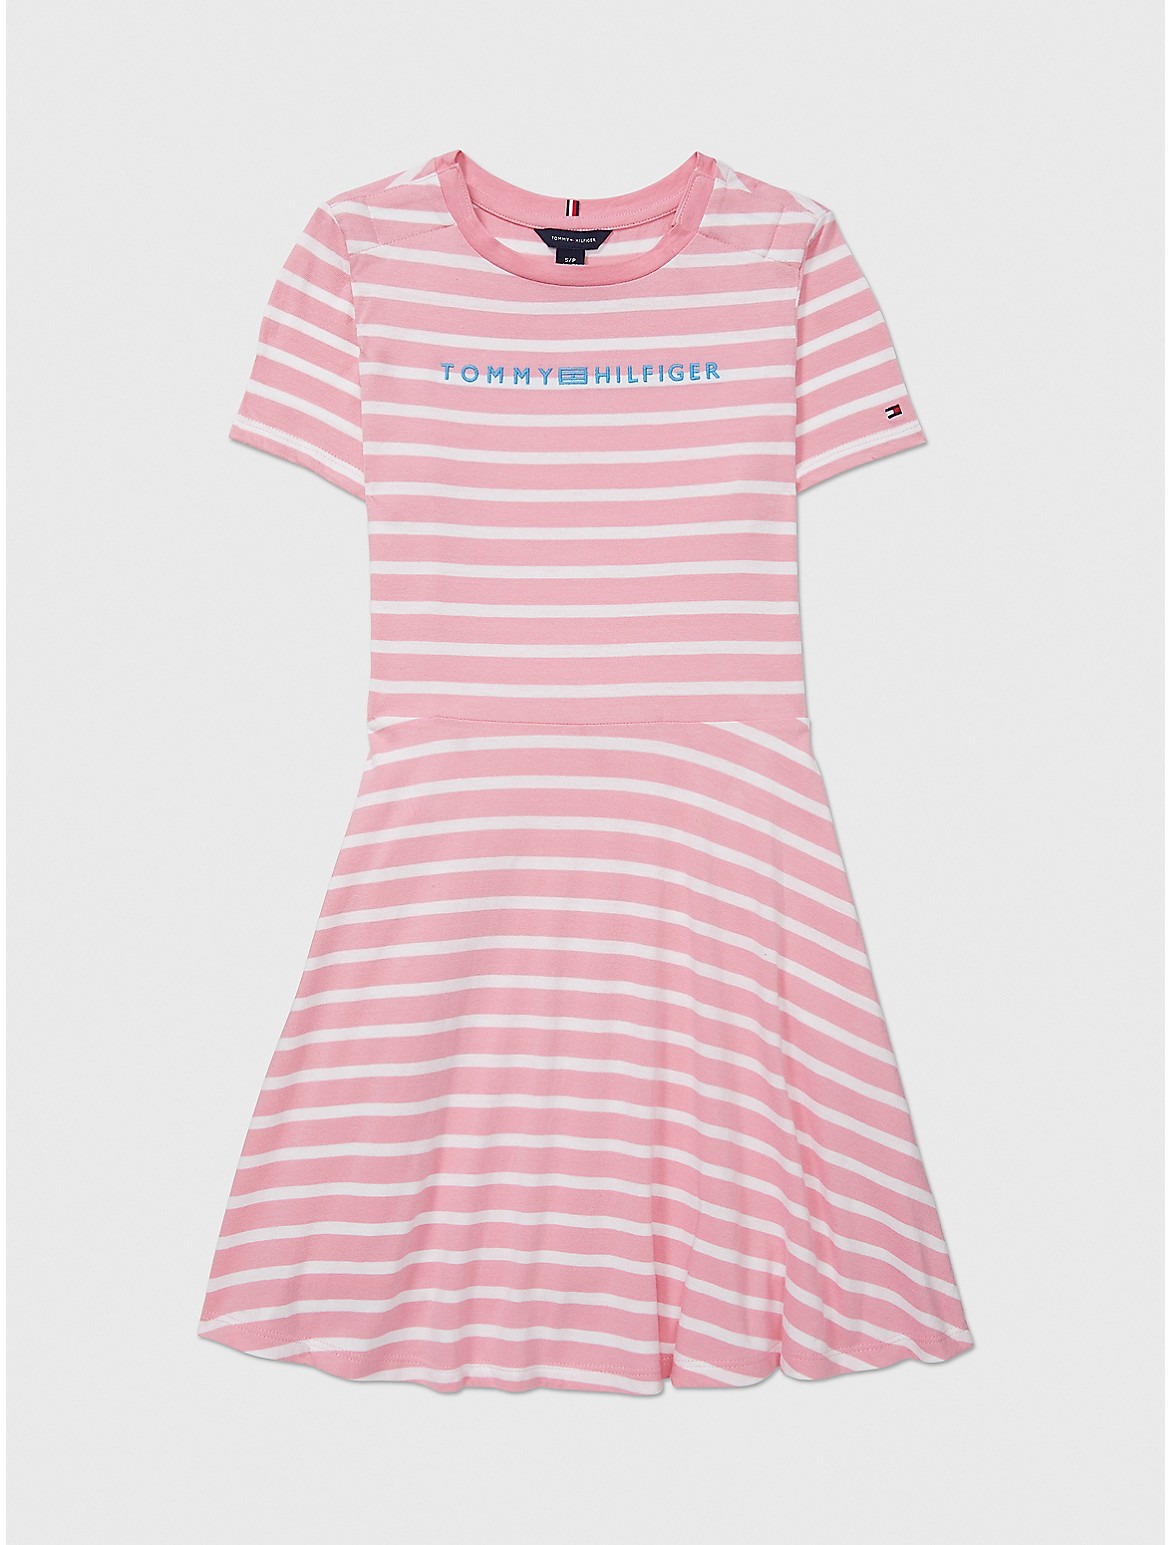 Tommy Hilfiger Girls' Kids' Stripe Skater Dress